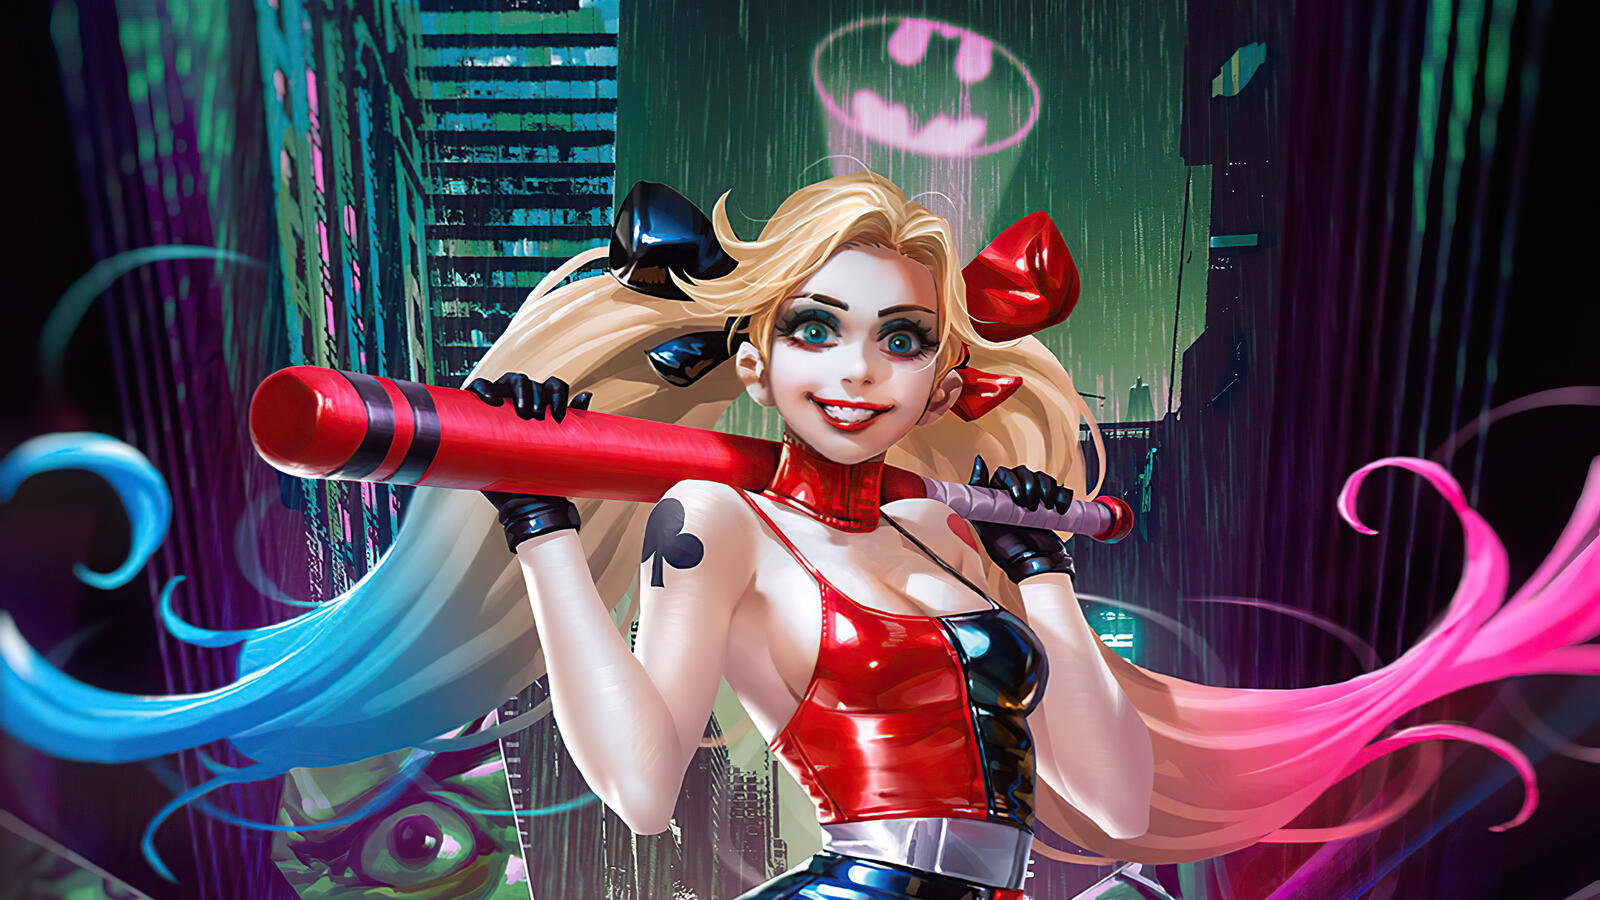 Wallpapers Harley Quinn artwork superheroes on the desktop